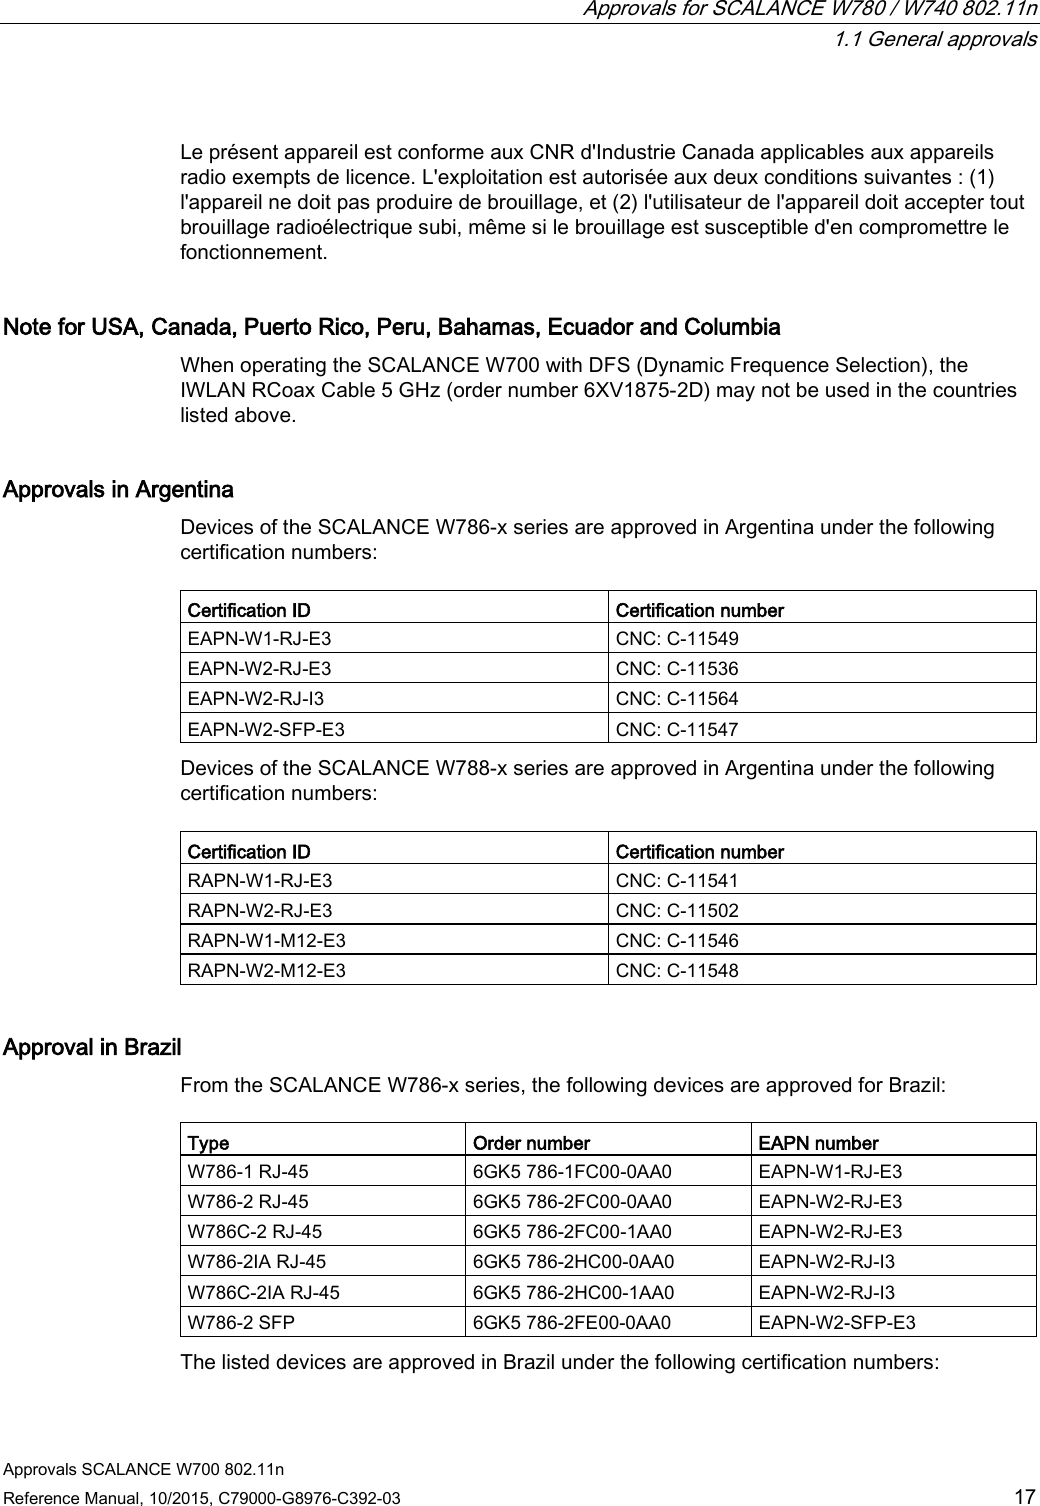  Approvals for SCALANCE W780 / W740 802.11n  1.1 General approvals Approvals SCALANCE W700 802.11n Reference Manual, 10/2015, C79000-G8976-C392-03 17  Le présent appareil est conforme aux CNR d&apos;Industrie Canada applicables aux appareils radio exempts de licence. L&apos;exploitation est autorisée aux deux conditions suivantes : (1) l&apos;appareil ne doit pas produire de brouillage, et (2) l&apos;utilisateur de l&apos;appareil doit accepter tout brouillage radioélectrique subi, même si le brouillage est susceptible d&apos;en compromettre le fonctionnement. Note for USA, Canada, Puerto Rico, Peru, Bahamas, Ecuador and Columbia When operating the SCALANCE W700 with DFS (Dynamic Frequence Selection), the IWLAN RCoax Cable 5 GHz (order number 6XV1875-2D) may not be used in the countries listed above. Approvals in Argentina Devices of the SCALANCE W786-x series are approved in Argentina under the following certification numbers:  Certification ID Certification number EAPN-W1-RJ-E3 CNC: C-11549 EAPN-W2-RJ-E3  CNC: C-11536 EAPN-W2-RJ-I3 CNC: C-11564 EAPN-W2-SFP-E3  CNC: C-11547 Devices of the SCALANCE W788-x series are approved in Argentina under the following certification numbers:  Certification ID Certification number RAPN-W1-RJ-E3 CNC: C-11541 RAPN-W2-RJ-E3 CNC: C-11502 RAPN-W1-M12-E3 CNC: C-11546 RAPN-W2-M12-E3 CNC: C-11548 Approval in Brazil From the SCALANCE W786-x series, the following devices are approved for Brazil:  Type Order number EAPN number W786-1 RJ-45 6GK5 786-1FC00-0AA0 EAPN-W1-RJ-E3 W786-2 RJ-45 6GK5 786-2FC00-0AA0 EAPN-W2-RJ-E3 W786C-2 RJ-45 6GK5 786-2FC00-1AA0 EAPN-W2-RJ-E3 W786-2IA RJ-45 6GK5 786-2HC00-0AA0 EAPN-W2-RJ-I3 W786C-2IA RJ-45 6GK5 786-2HC00-1AA0 EAPN-W2-RJ-I3 W786-2 SFP 6GK5 786-2FE00-0AA0 EAPN-W2-SFP-E3 The listed devices are approved in Brazil under the following certification numbers: 